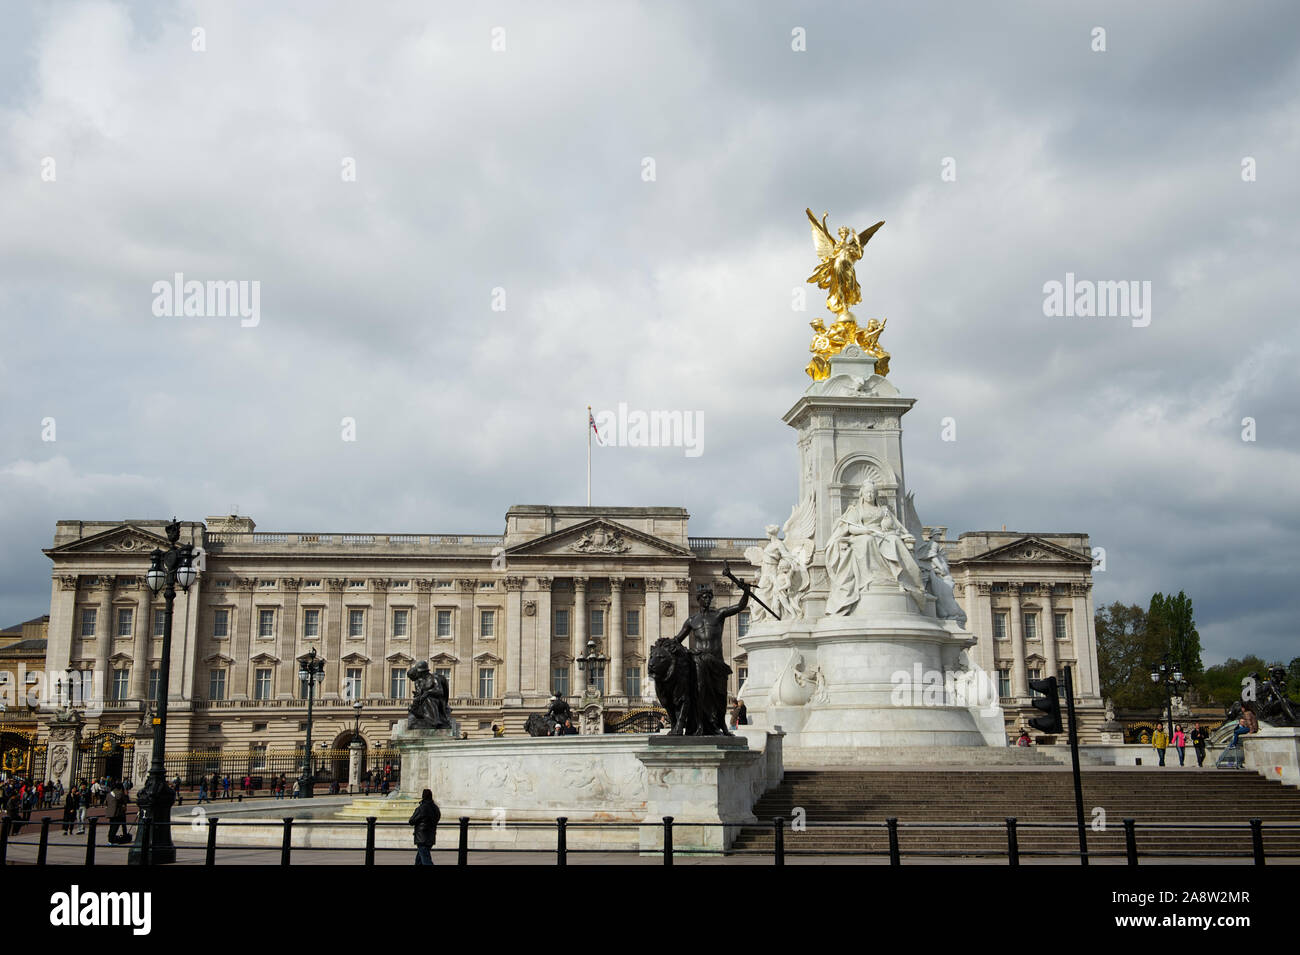 London - 7. MAI 2012: Grauer Himmel hängt über Fußgängern, die das Victoria Monument vor dem Buckingham Palace passieren. Stockfoto